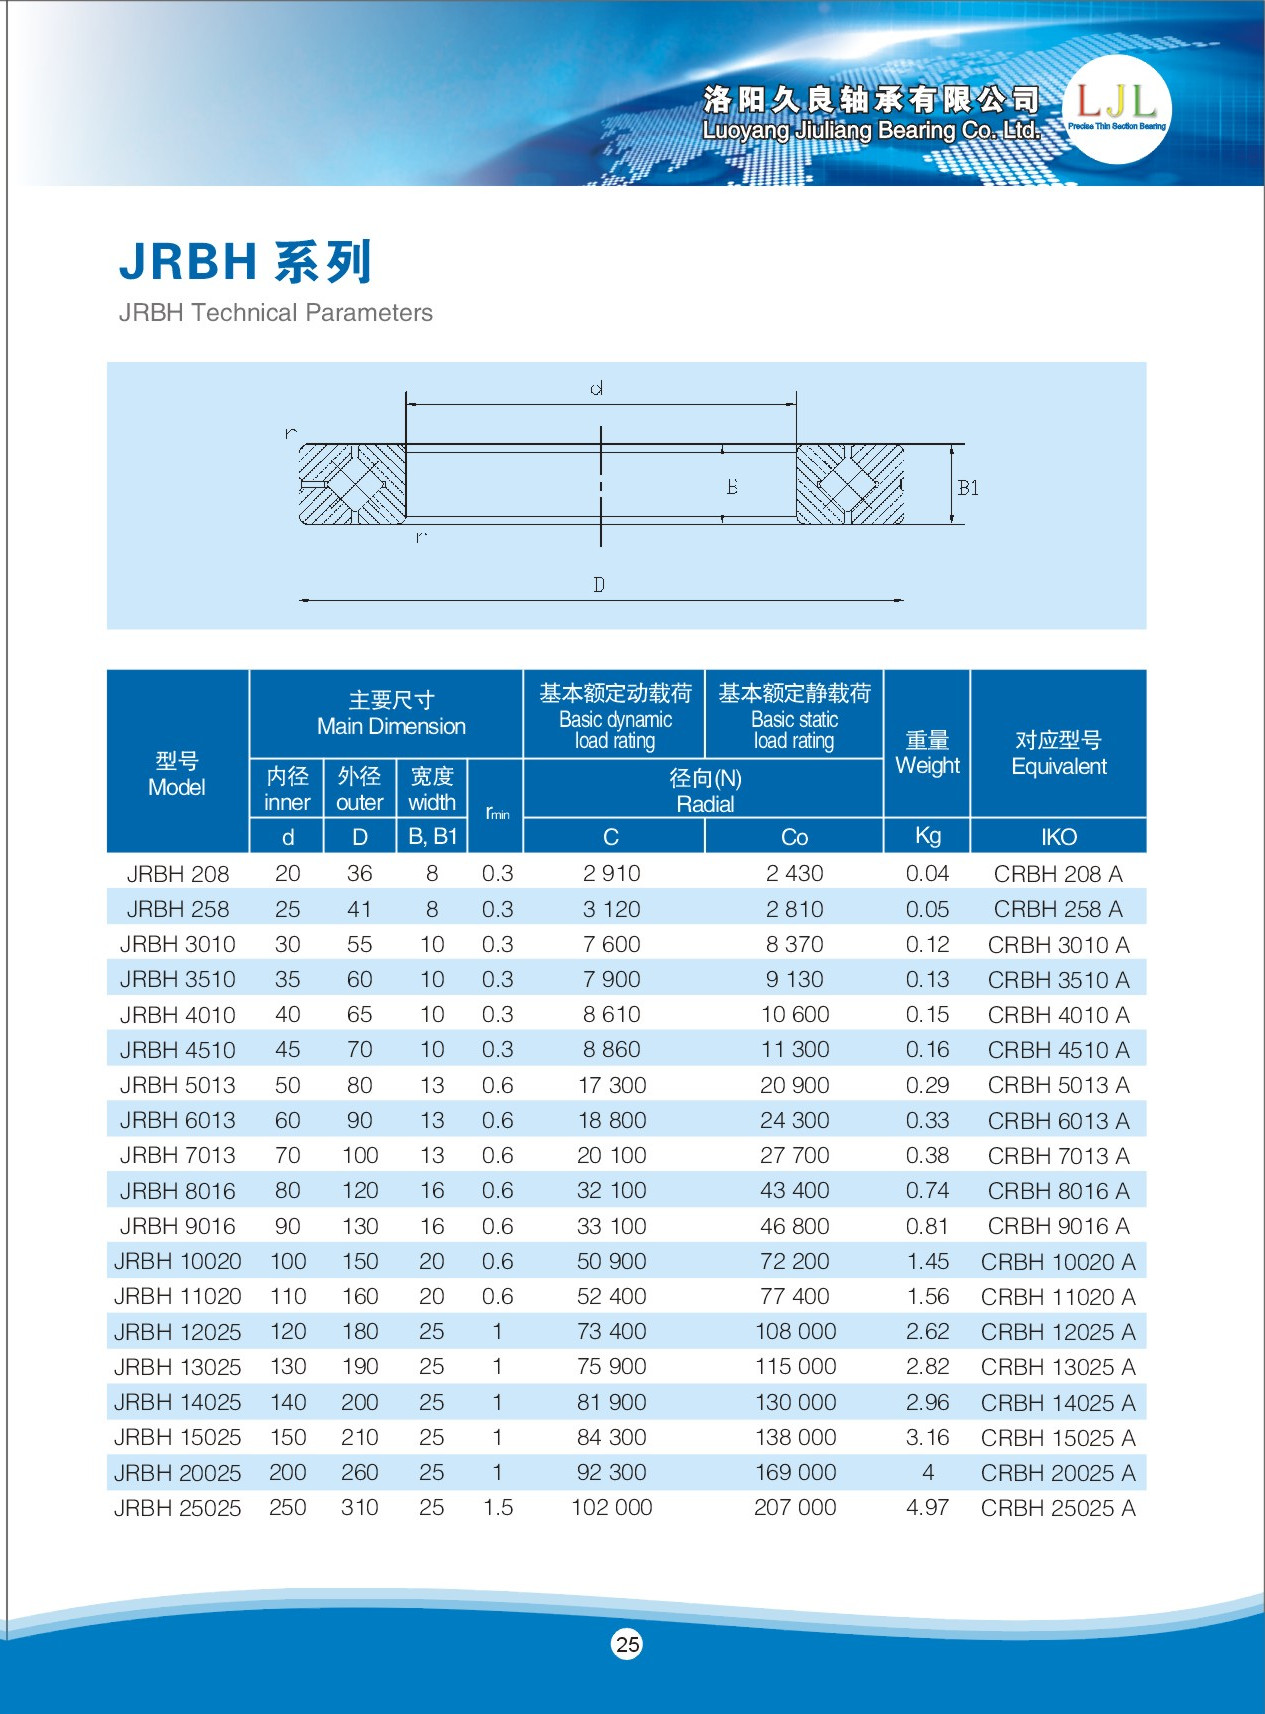 JRBH208 | JRBH258 | JRBH3010 | JRBH3510 | JRBH4010 | JRBH4510 | JRBH5013 | JRBH6013 | JRBH7013 | JRBH8016 | JRBH9016 | JRBH10020 | JRBH11020 | JRBH12025 | JRBH13025 | JRBH14025 | JRBH15025 | JRBH20025 | JRBH25025 | CRBH208A | CRBH258A | CRBH3010A | CRBH3510A | CRBH4010A | CRBH4510A | CRBH5013A | CRBH6013A | CRBH7013A | CRBH8016A | CRBH9016A | CRBH10020A | CRBH11020A | CRBH12025A | CRBH13025A | CRBH14025A | CRBH15025A | CRBH20025A | CRBH25025A | 